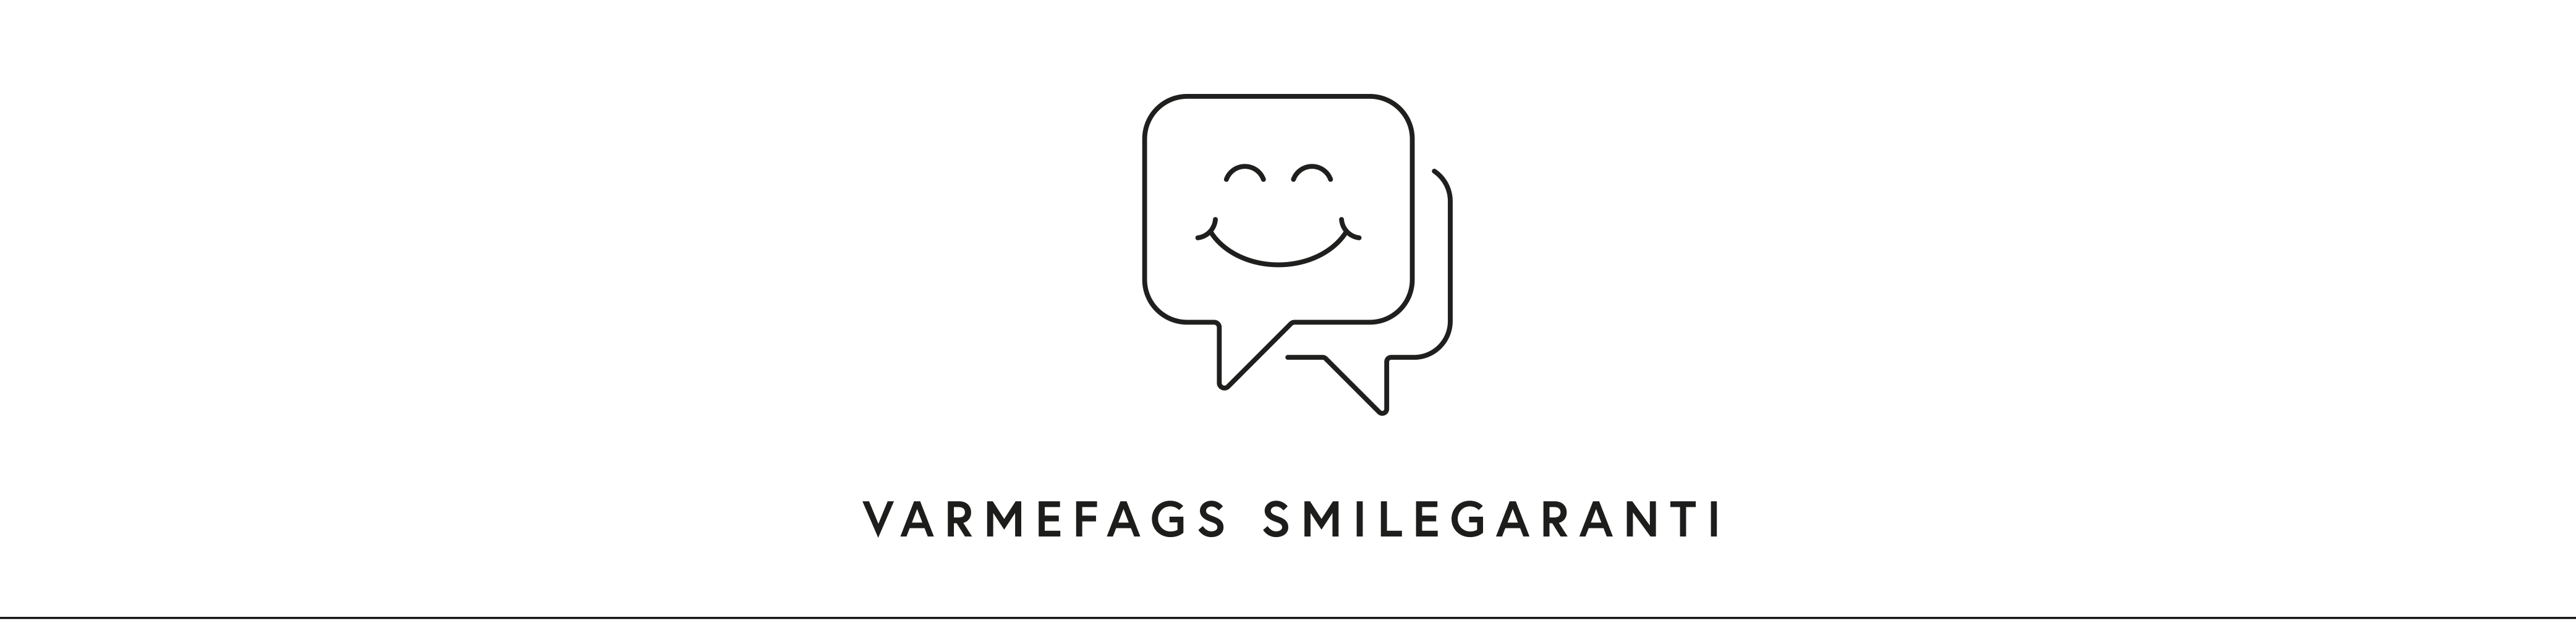 Logo og tekst med "Varmefags smilegaranti" på banneren